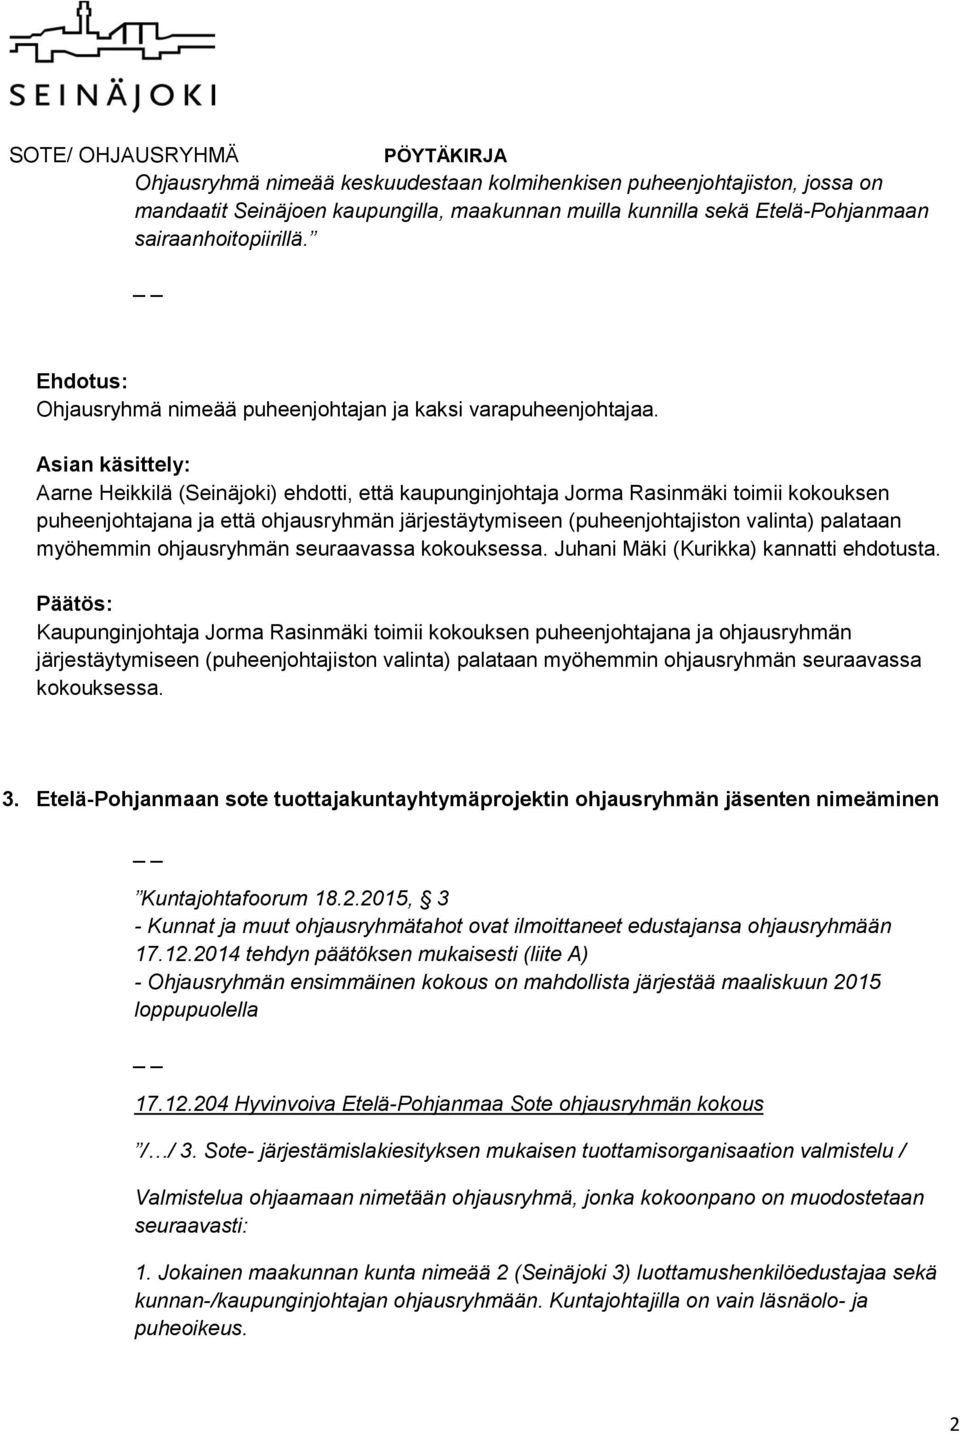 Asian käsittely: Aarne Heikkilä (Seinäjoki) ehdotti, että kaupunginjohtaja Jorma Rasinmäki toimii kokouksen puheenjohtajana ja että ohjausryhmän järjestäytymiseen (puheenjohtajiston valinta) palataan